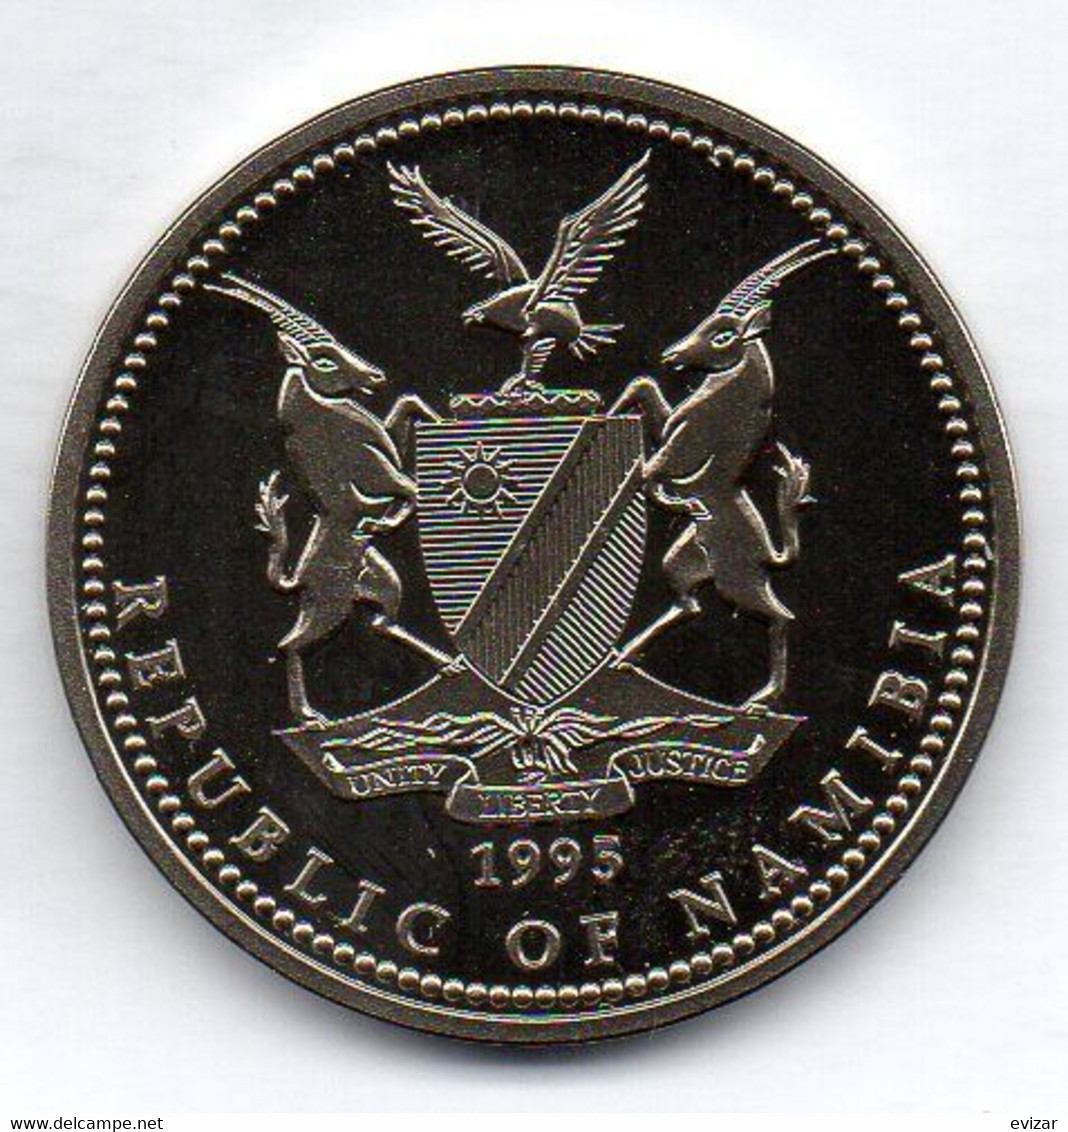 NAMIBIA, 1 Dollar, Copper-Nickel, Year 1995, KM #7 - Namibie